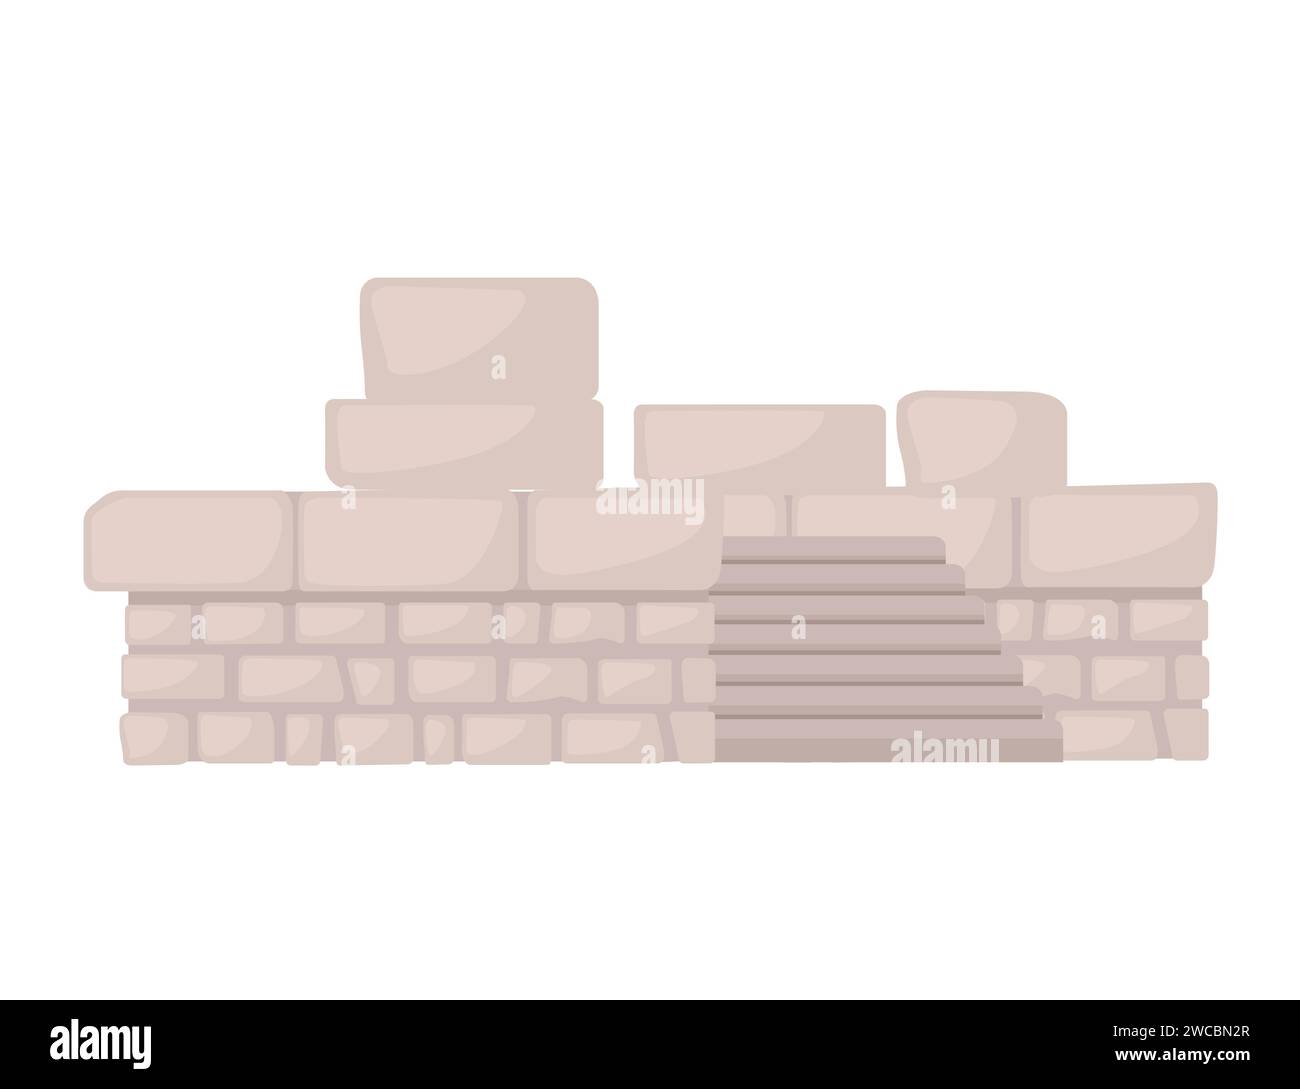 Ancienne ruine de temple architecture romaine et grecque pierres de marbre illustration vectorielle isolée sur fond blanc Illustration de Vecteur